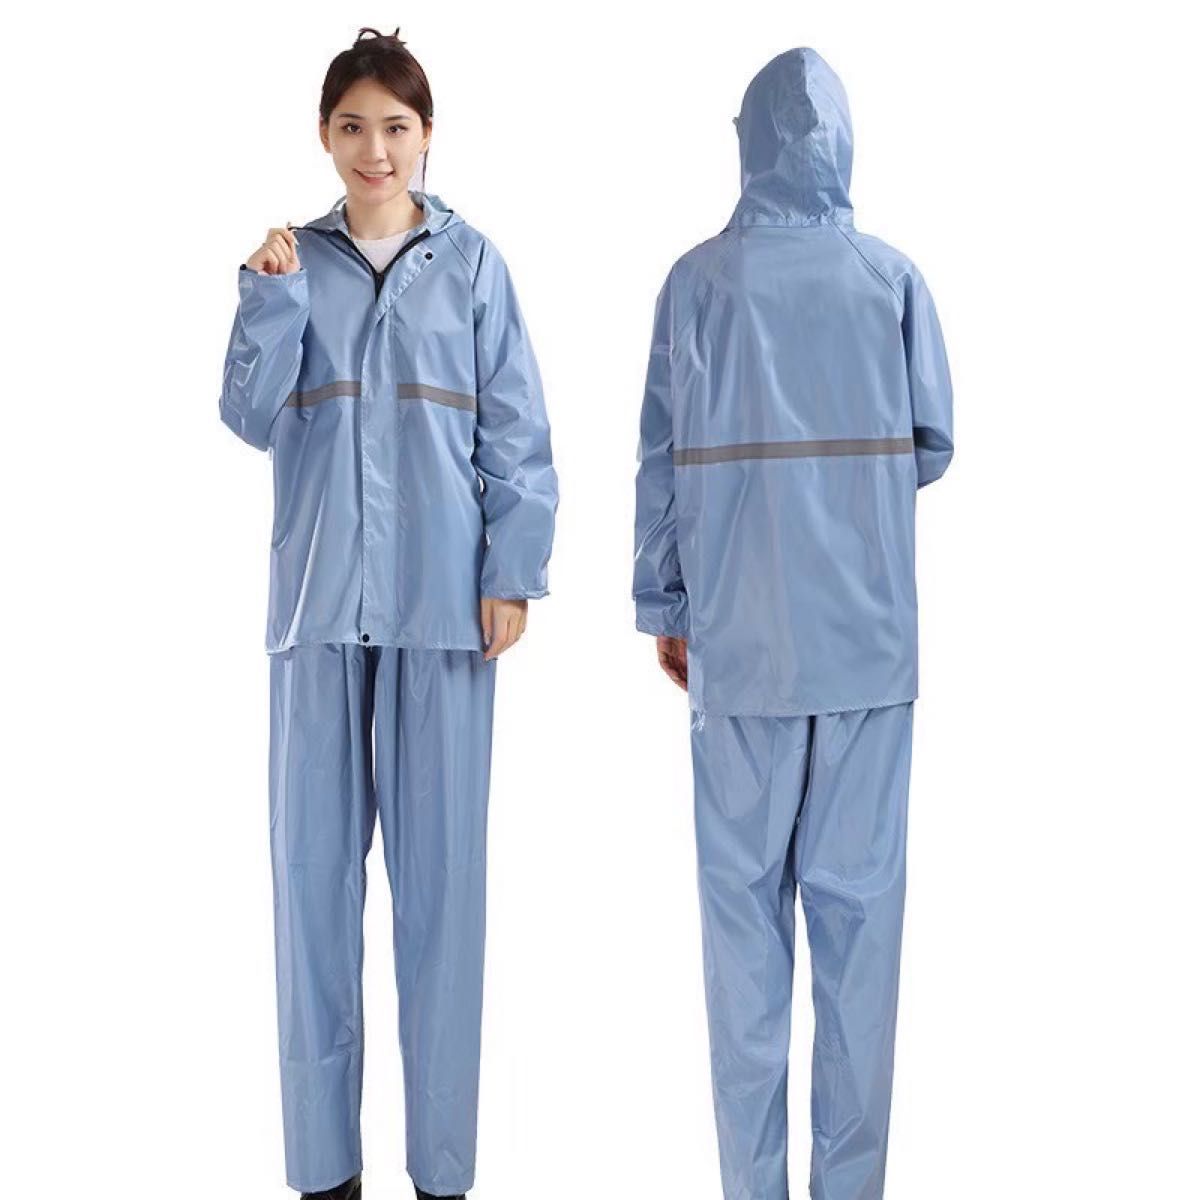 XL ブルー レインコート パンツ 男女兼用 雨具 撥水 カッパ 強風 梅雨 通勤 通学 作業服 レディース ゴム ゆったり